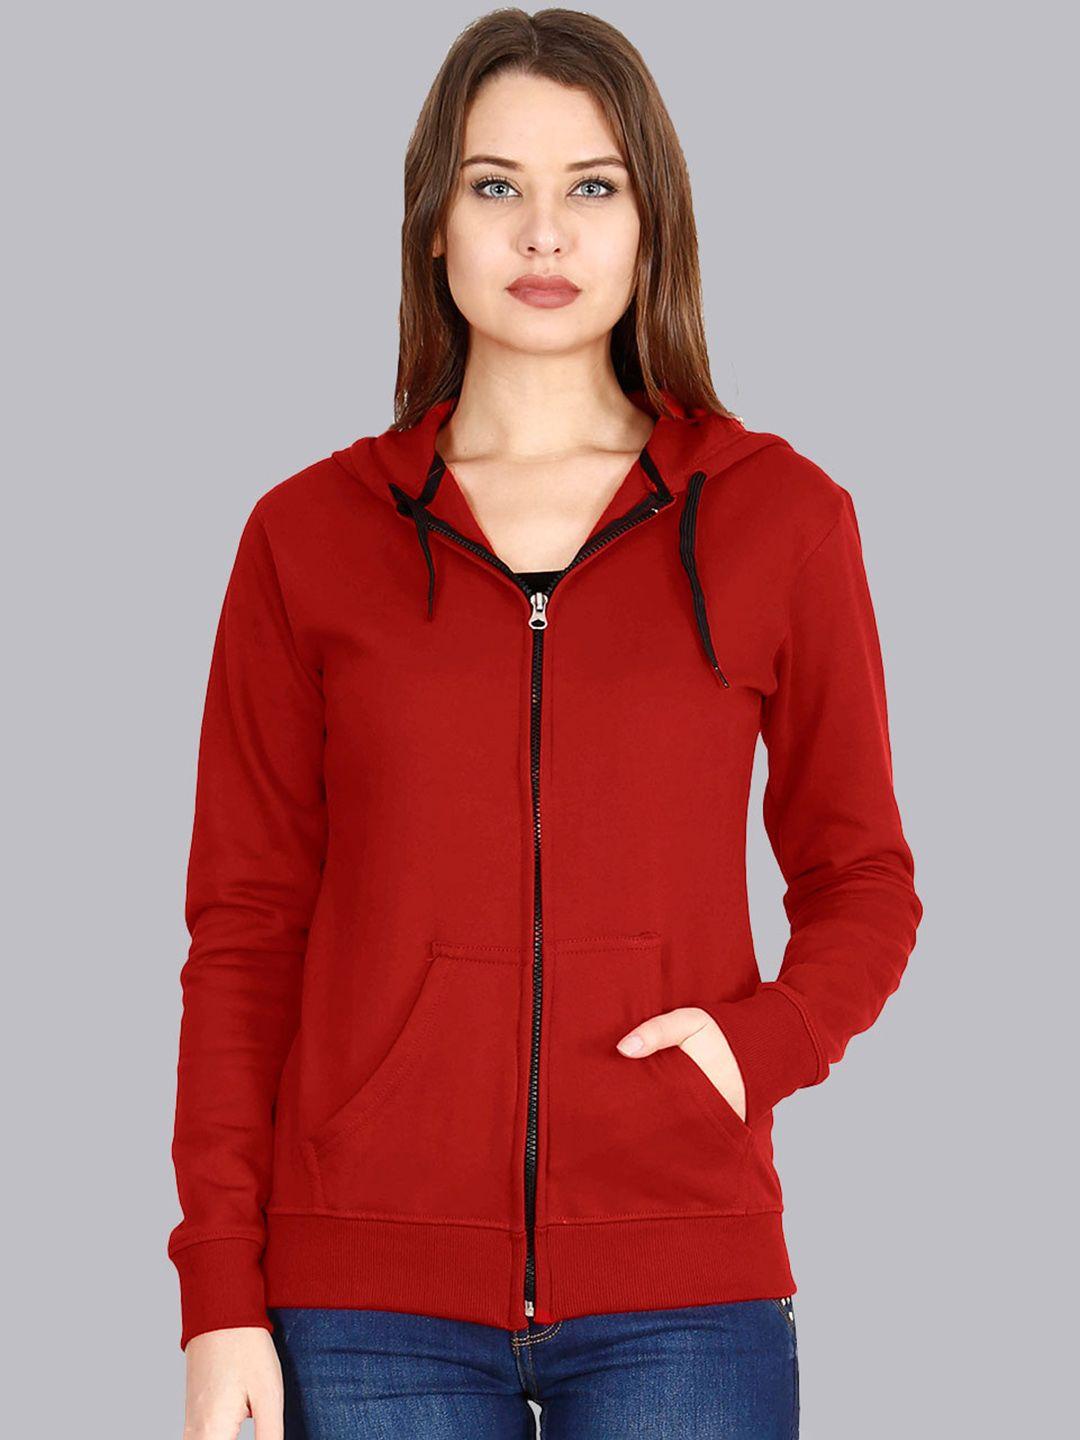 fleximaa women red solid hooded sweatshirt